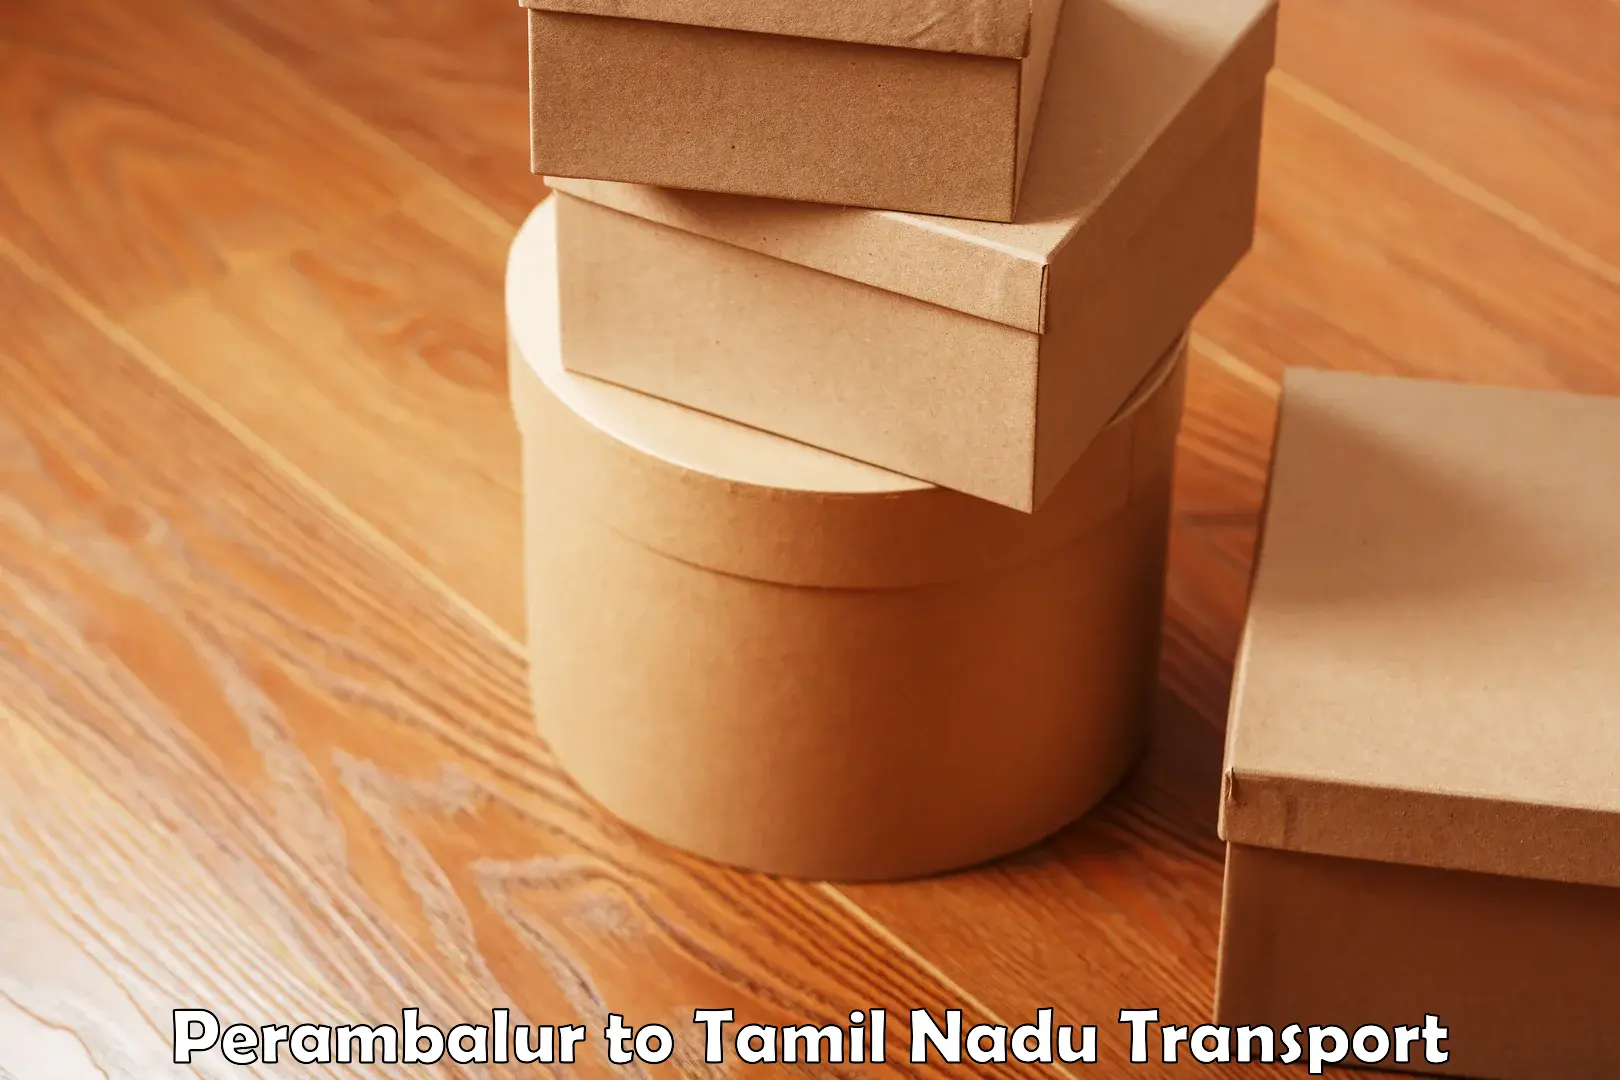 Furniture transport service Perambalur to The Gandhigram Rural Institute